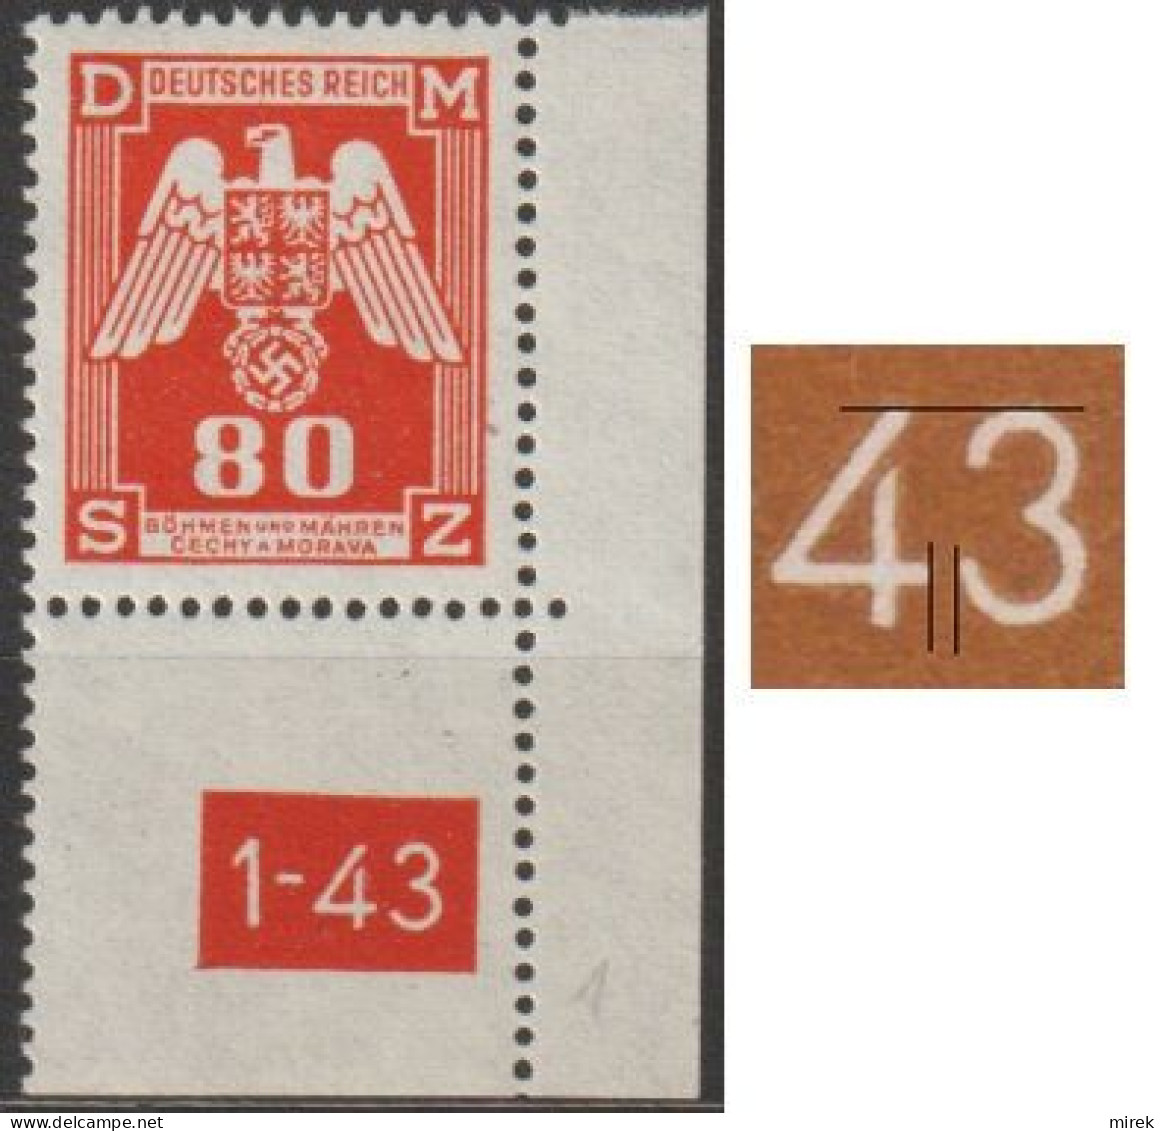 017/ Pof. SL 17, Corner Stamp, Plate Number 1-43, Type 1, Var. 1 - Ungebraucht